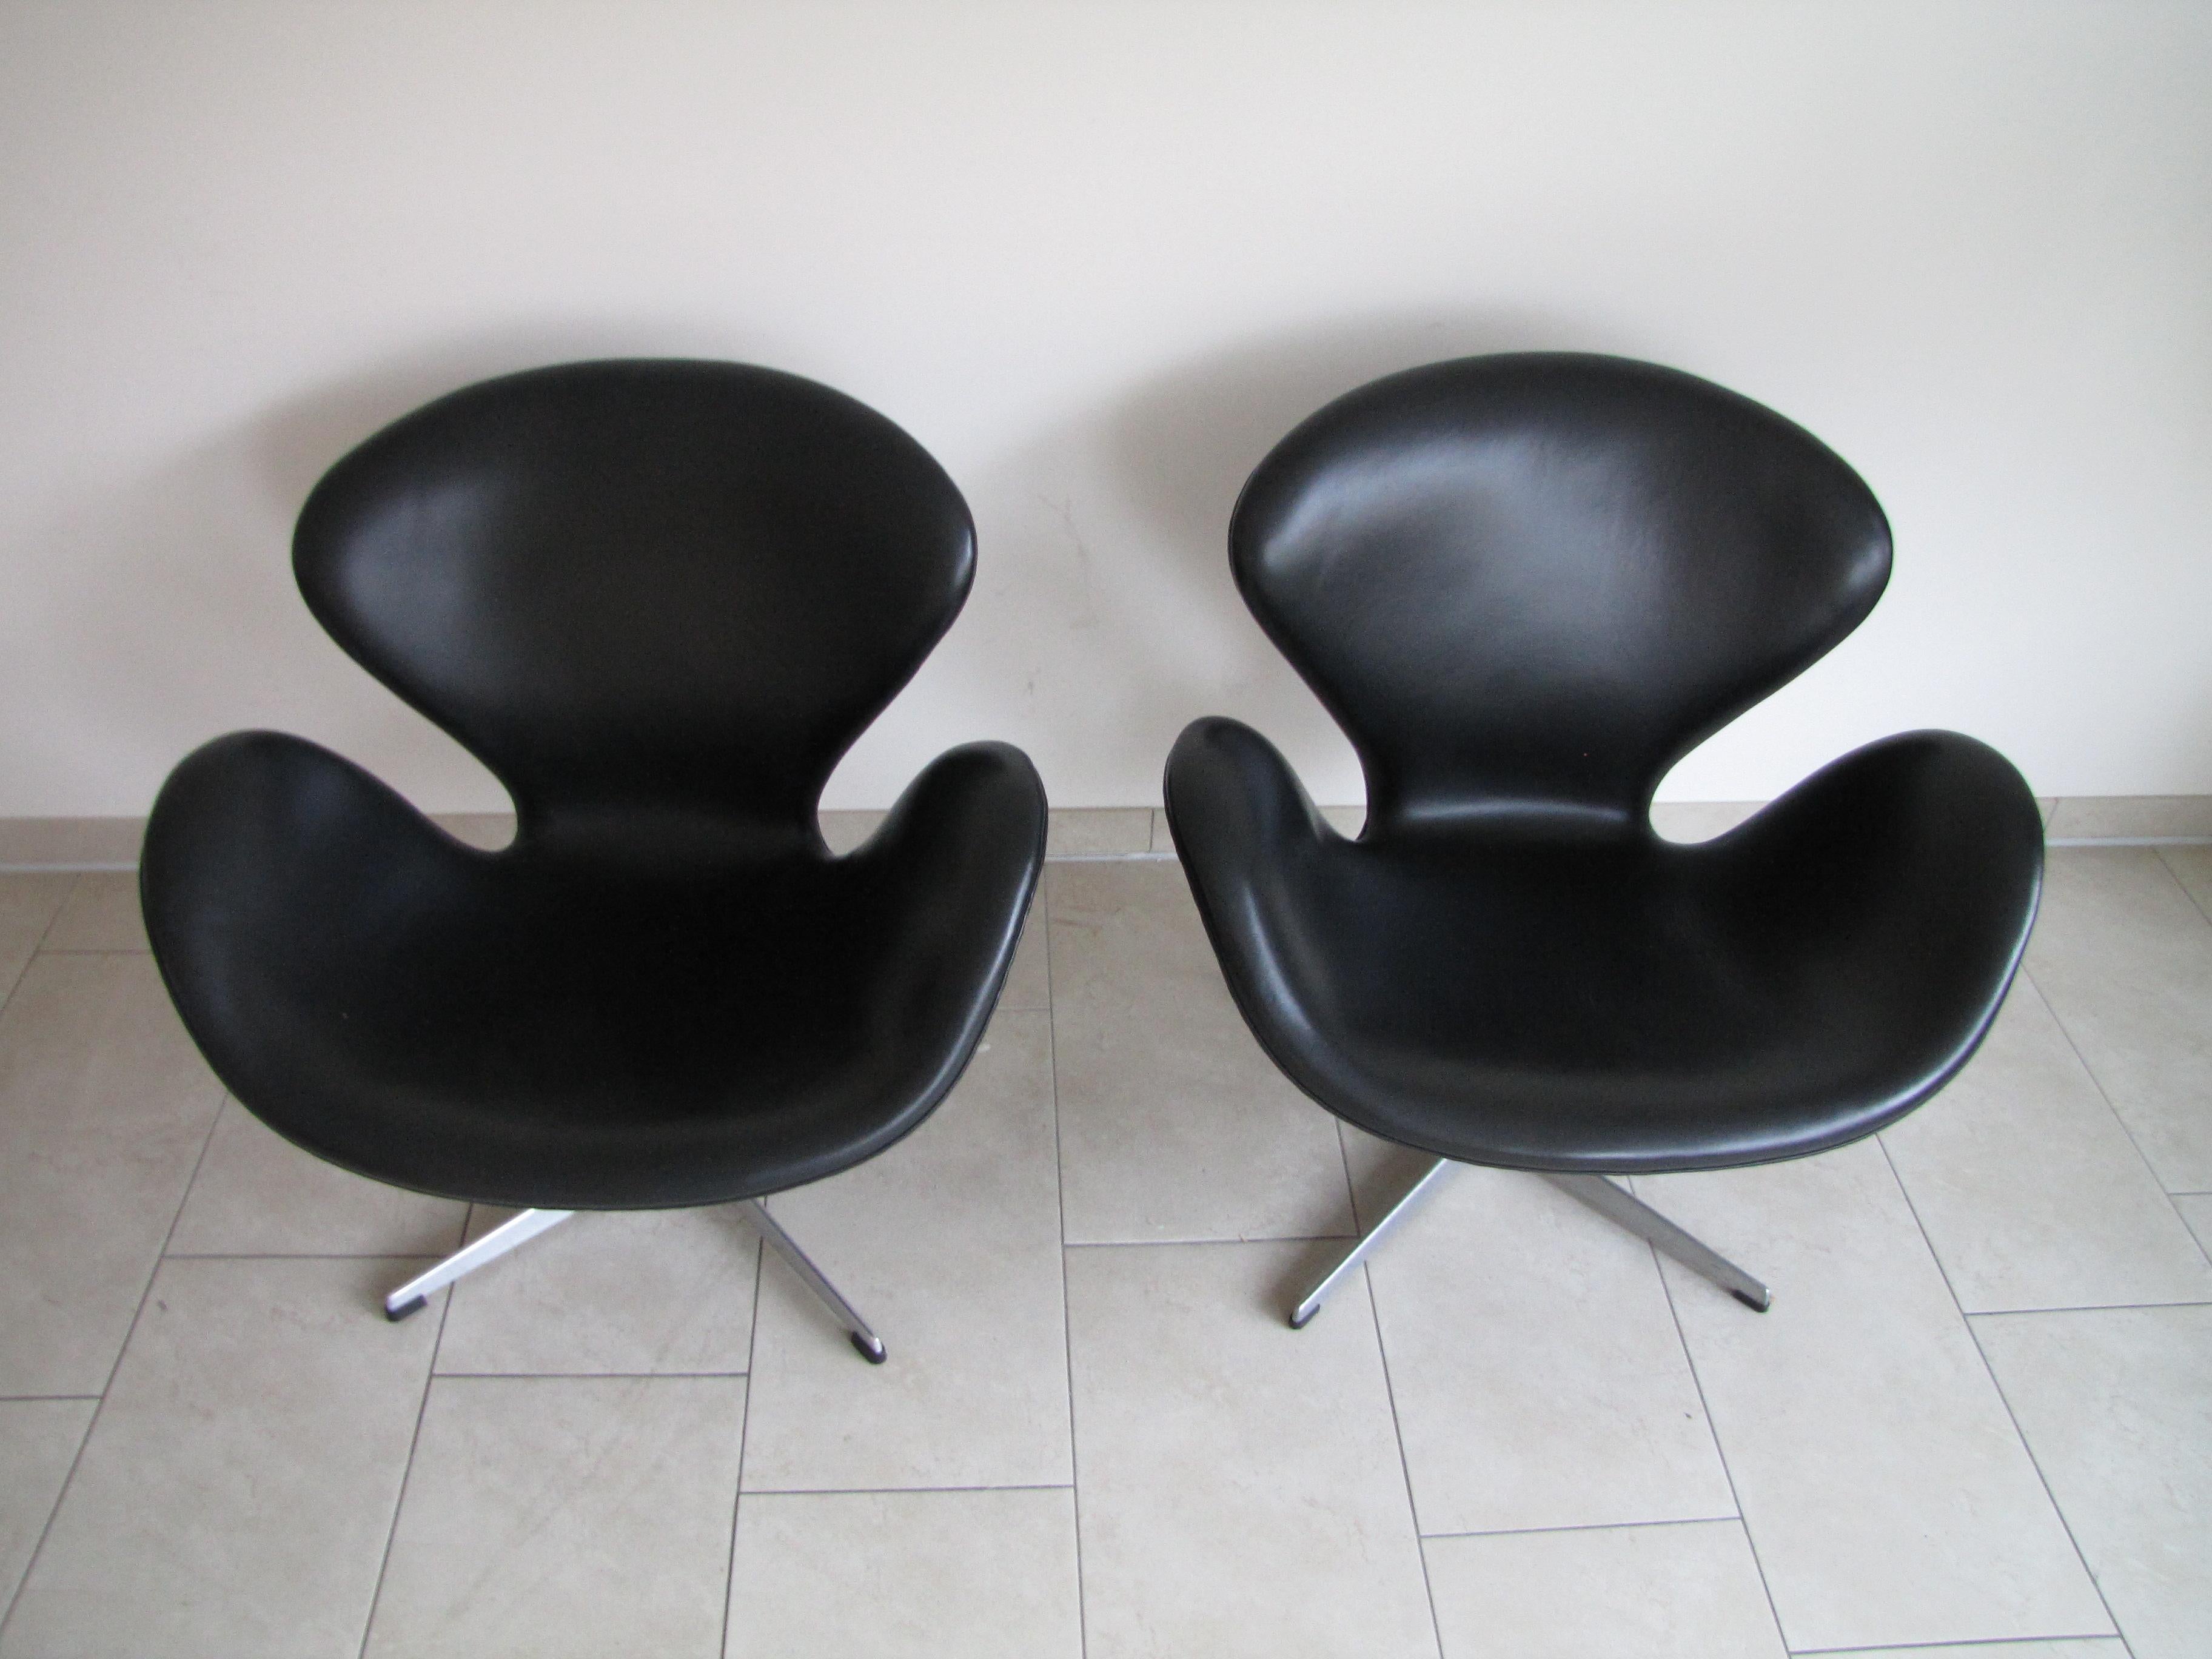 Ensemble de deux chaises Swan conçues par Arne Jacobsen pour Fritz Hansen en 1958.
rembourré en cuir noir
les premières productions des années 1960